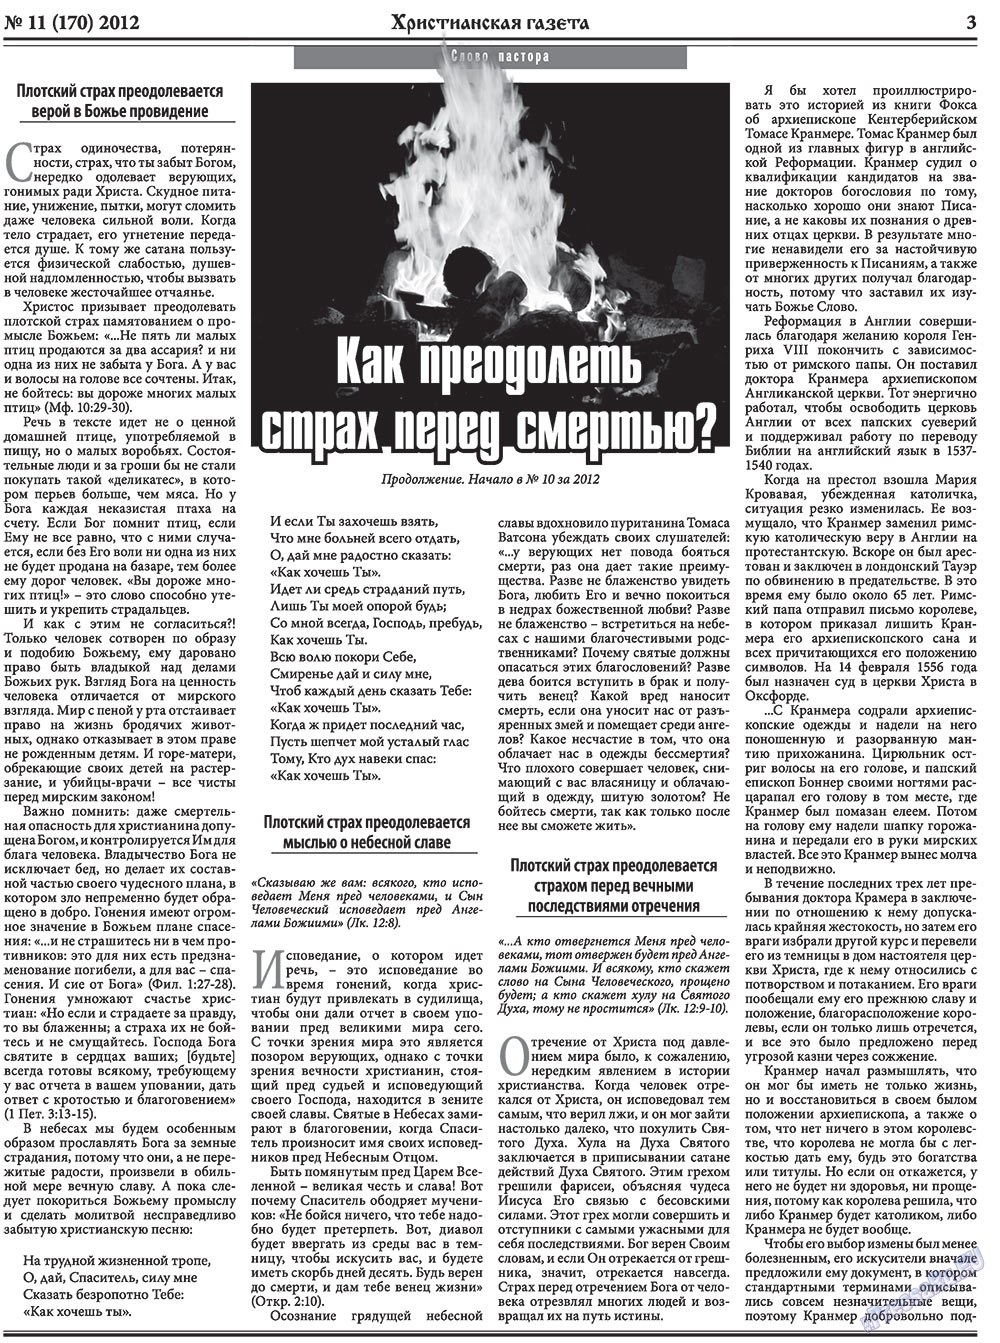 Христианская газета, газета. 2012 №11 стр.3